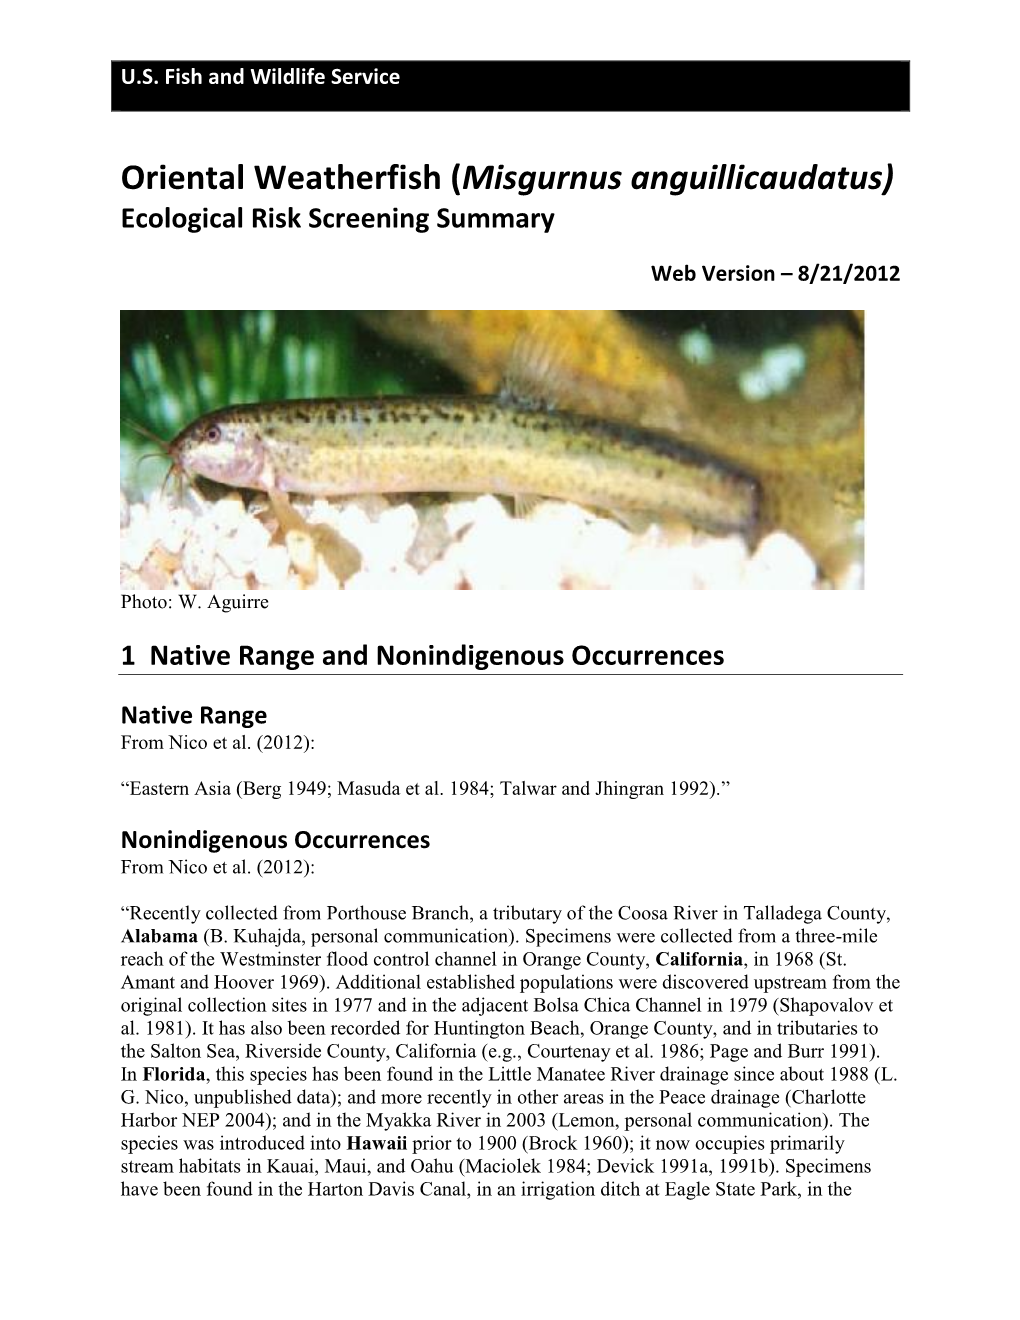 Weatherfish, Oriental (Misgurnus Anguillicaudatus)